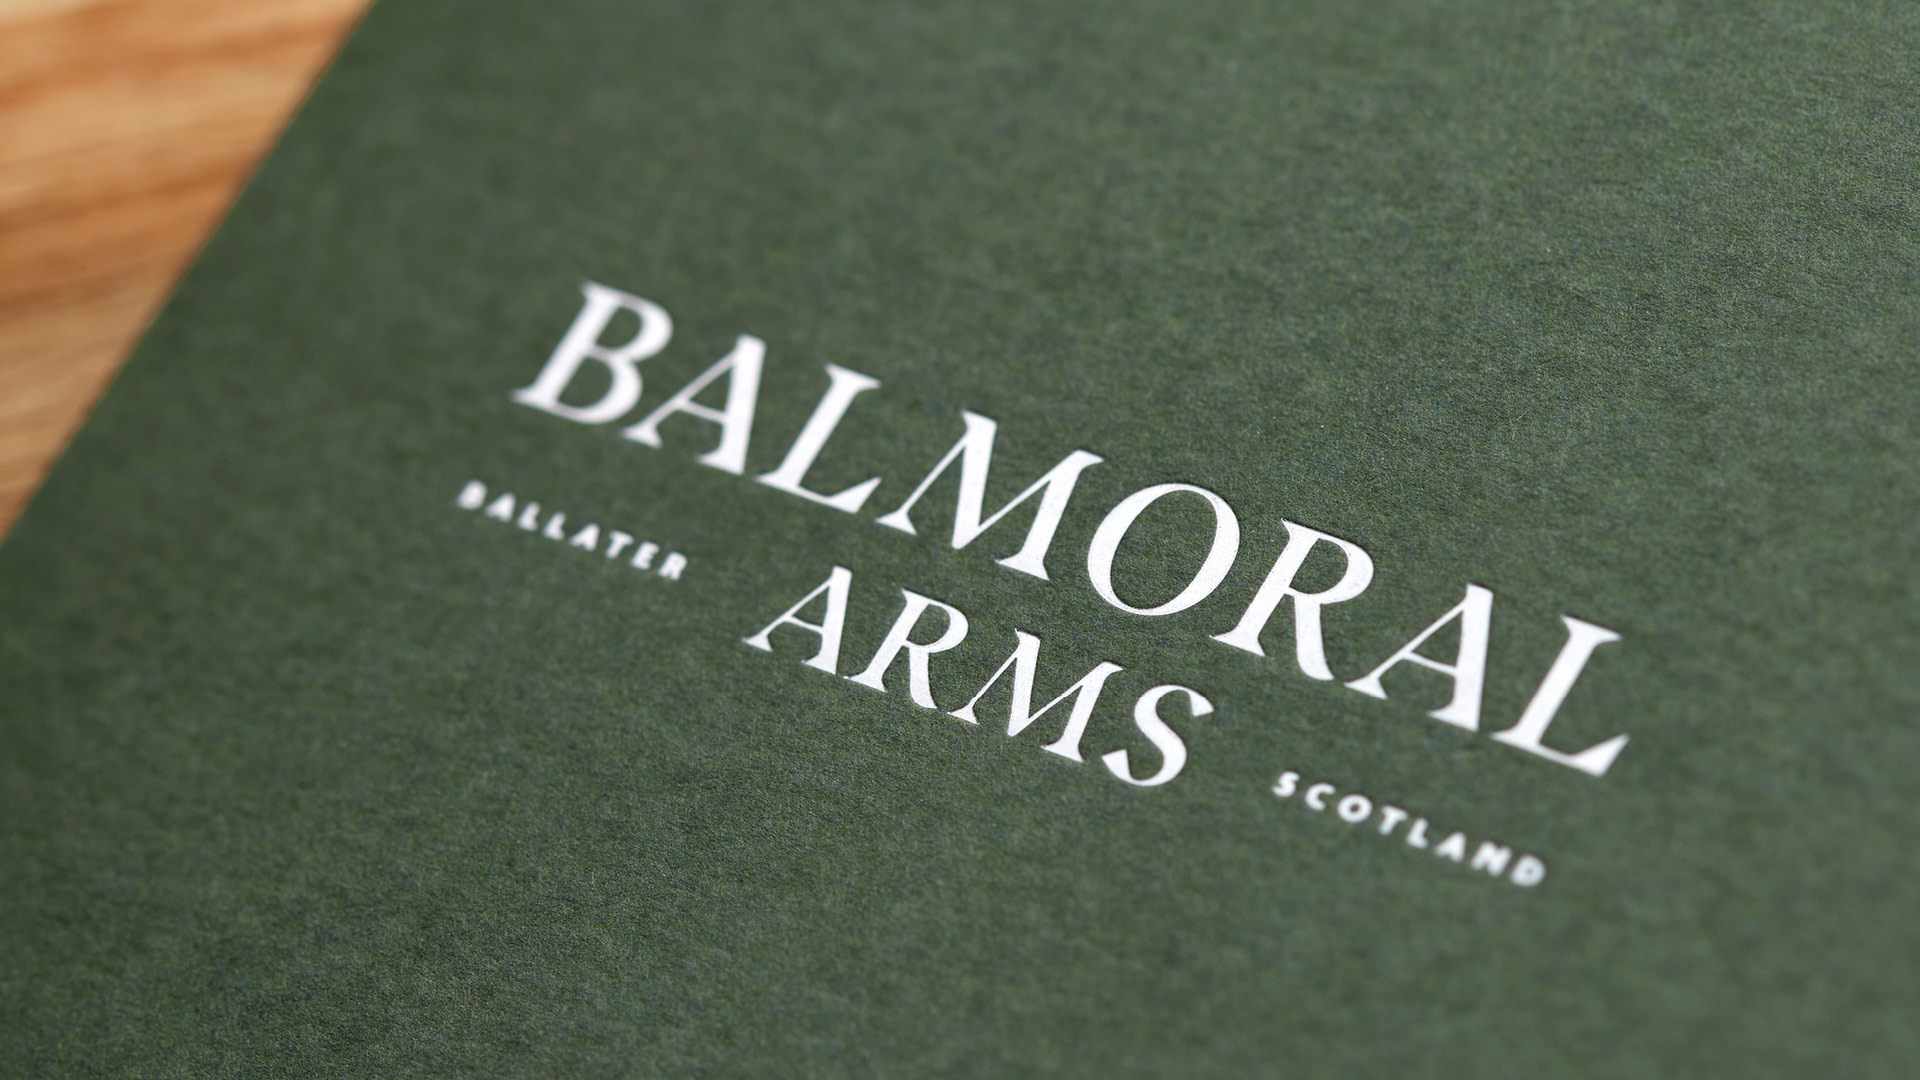 Balmoral Arms Brand Design